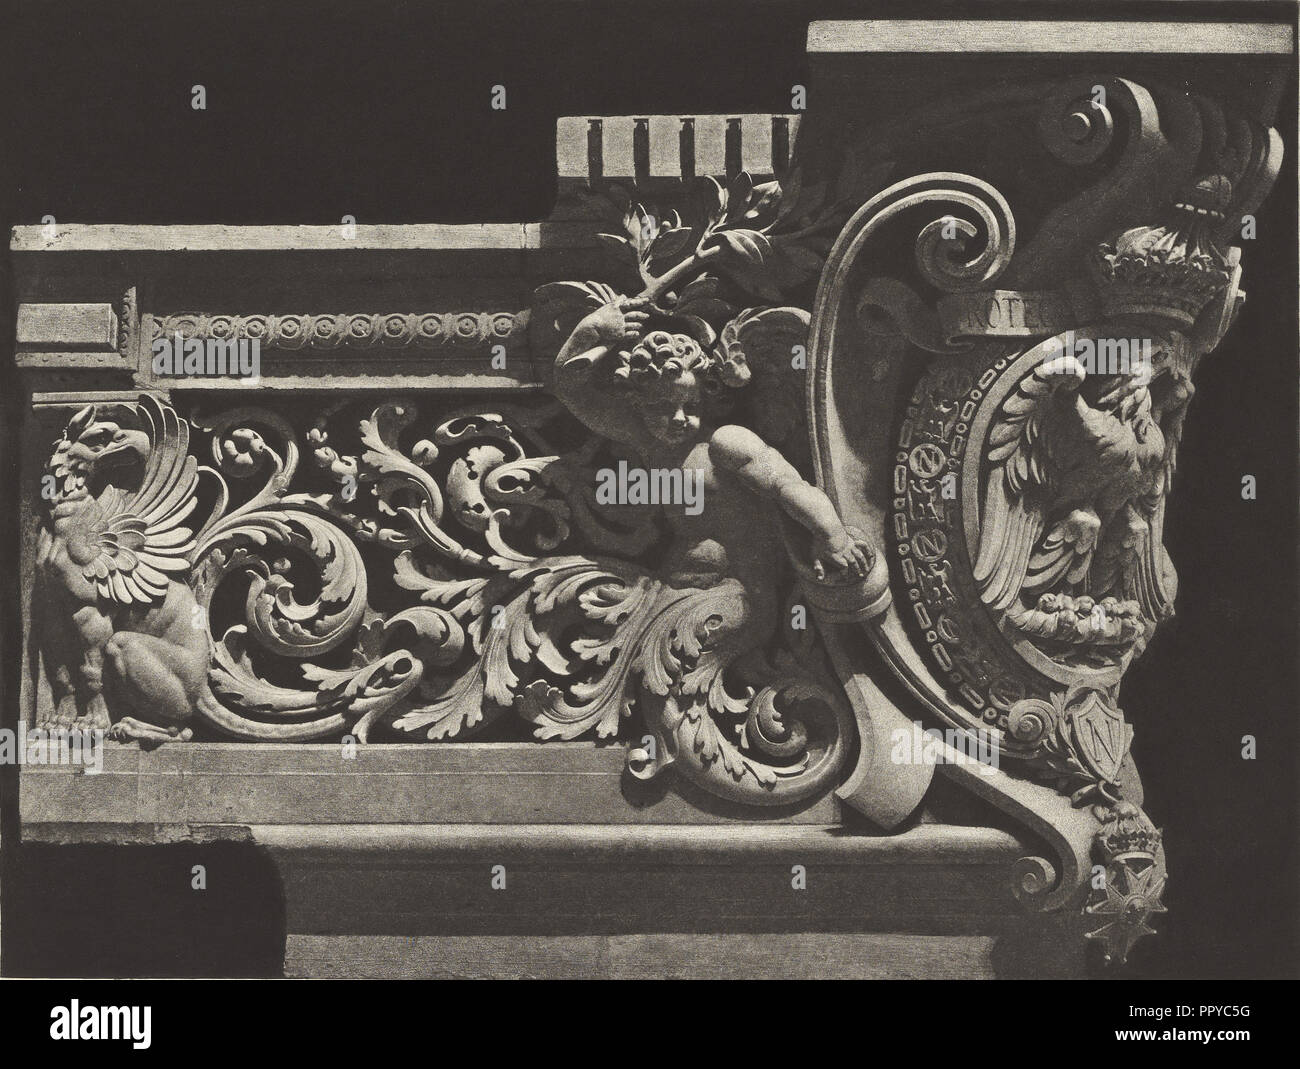 Pavillon de Flore; Édouard Baldus, French, born Germany, 1813 - 1889, Paris, France; about 1868; Heliogravure; Sheet: 31.5 x 45 Stock Photo